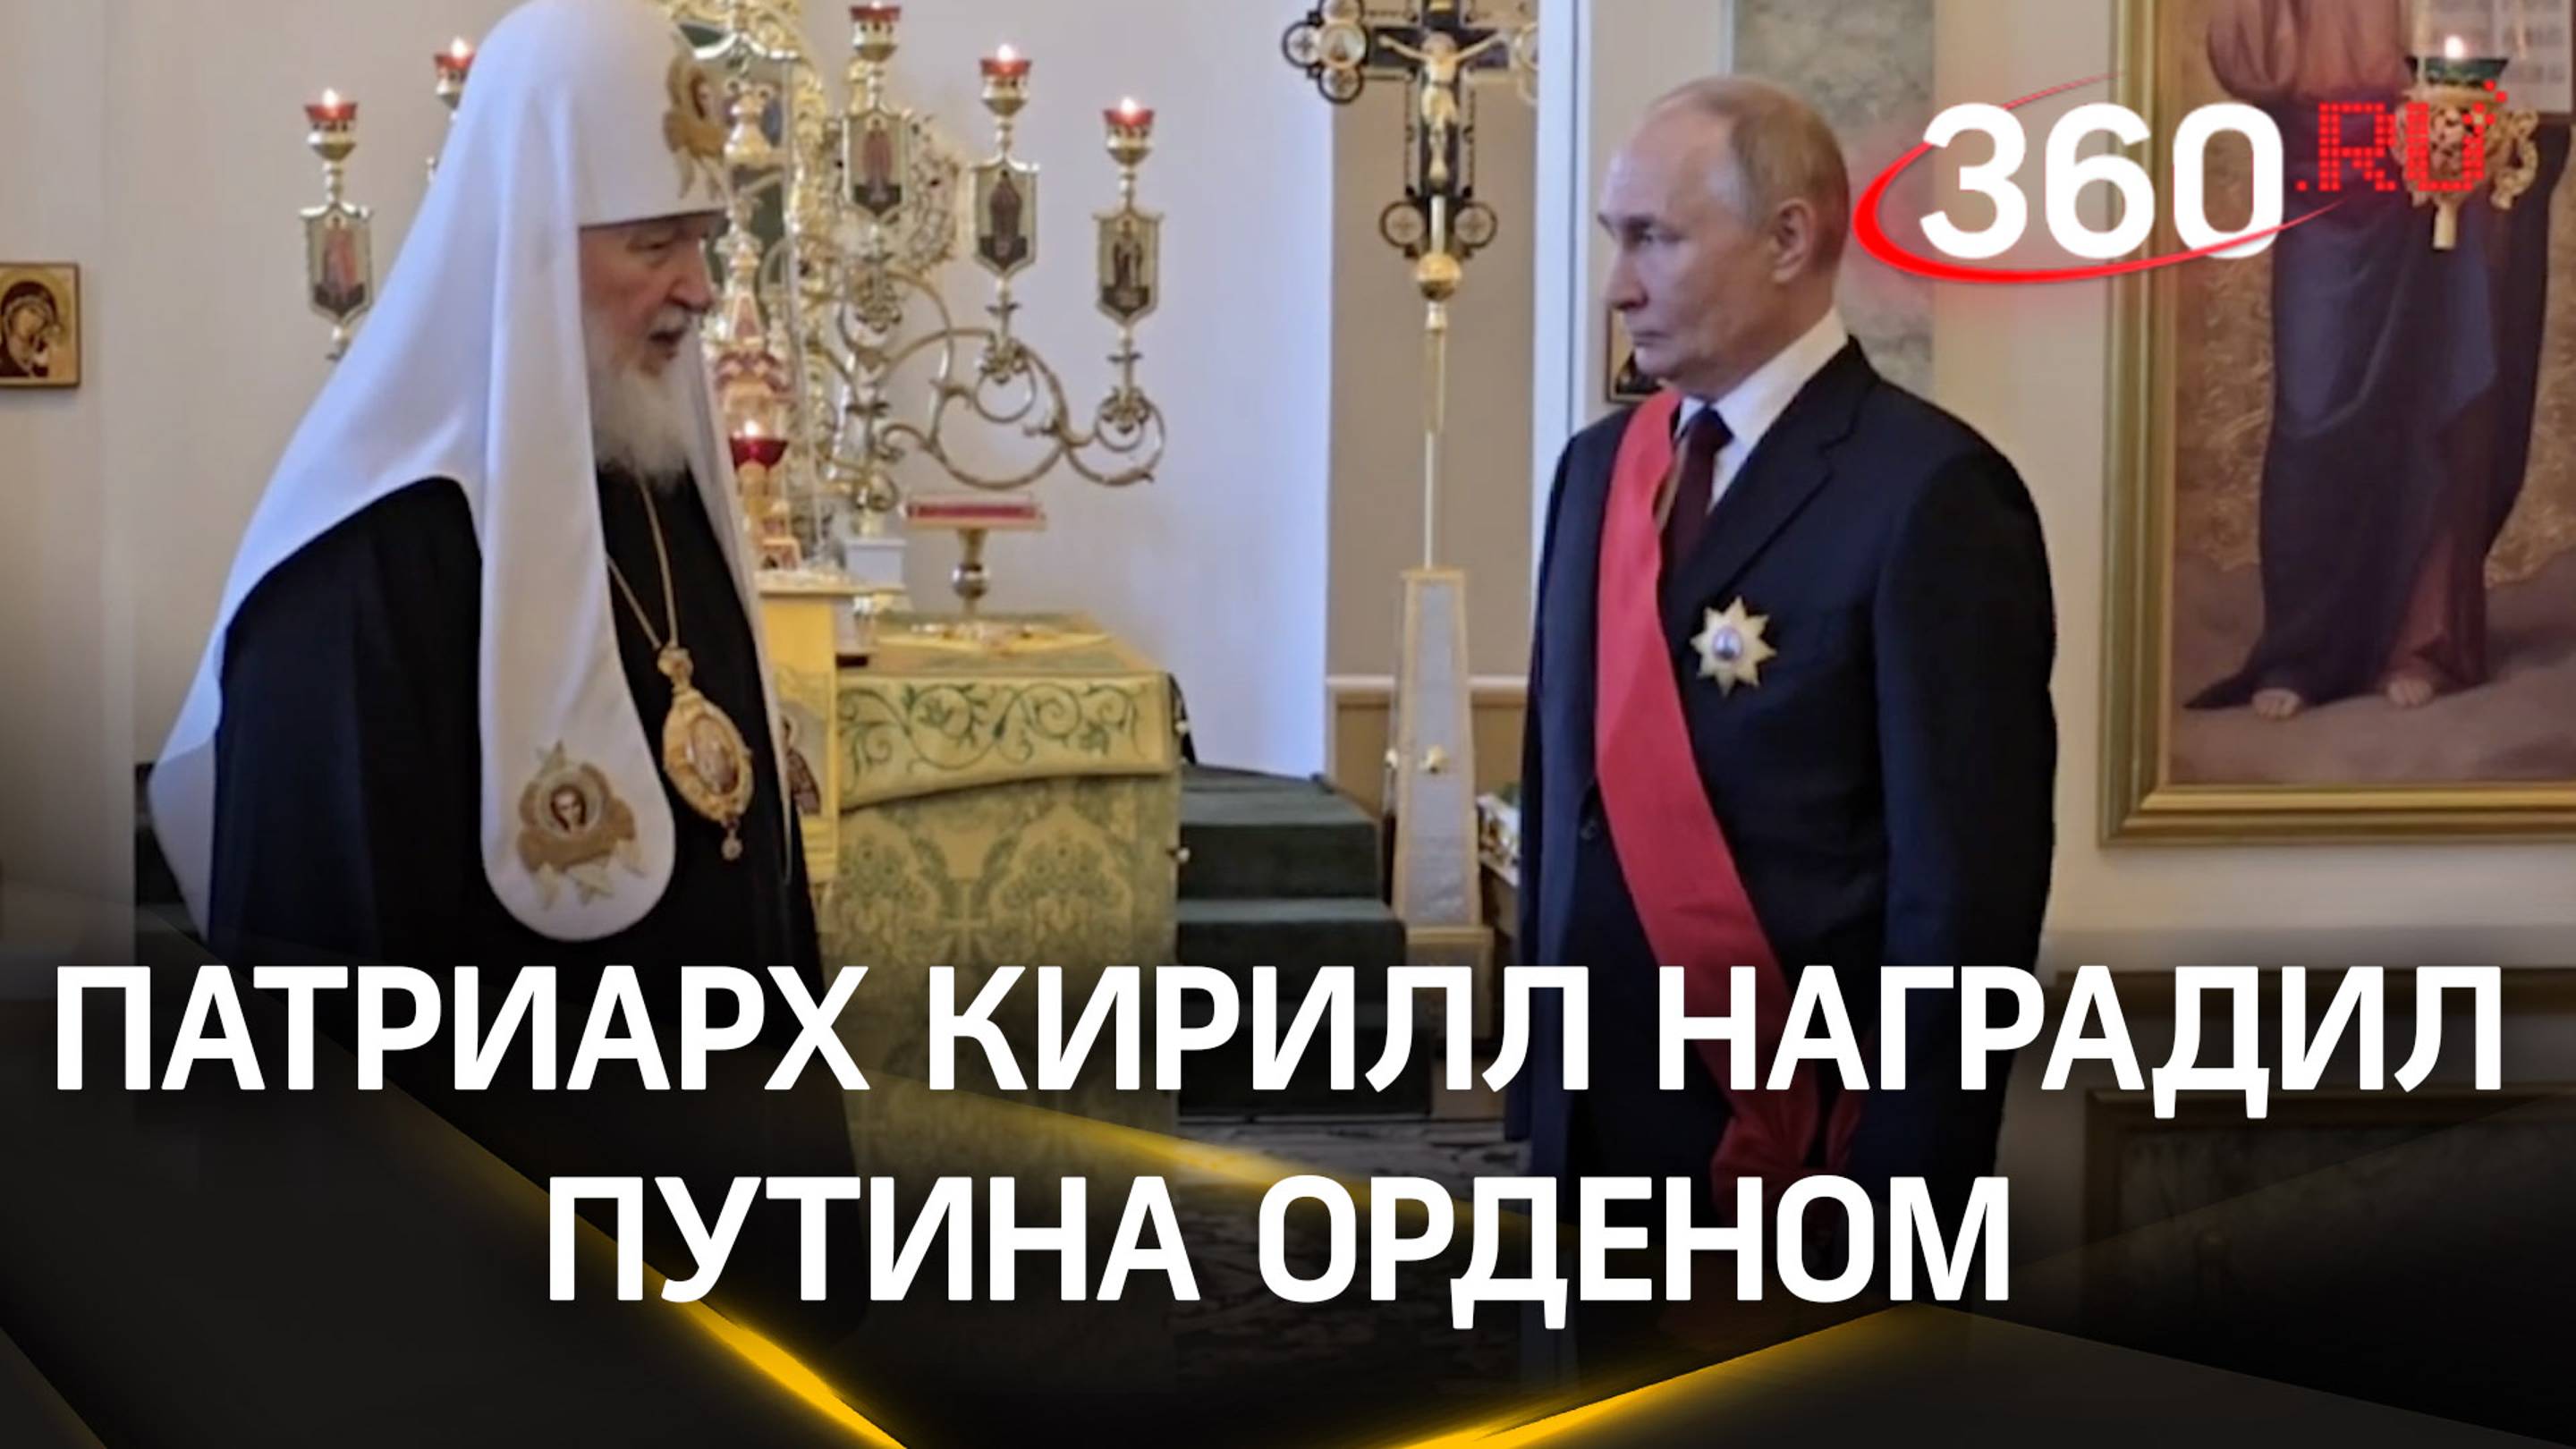 Патриарх Кирилл вручил Путину орден святого благоверного великого князя Александра Невского